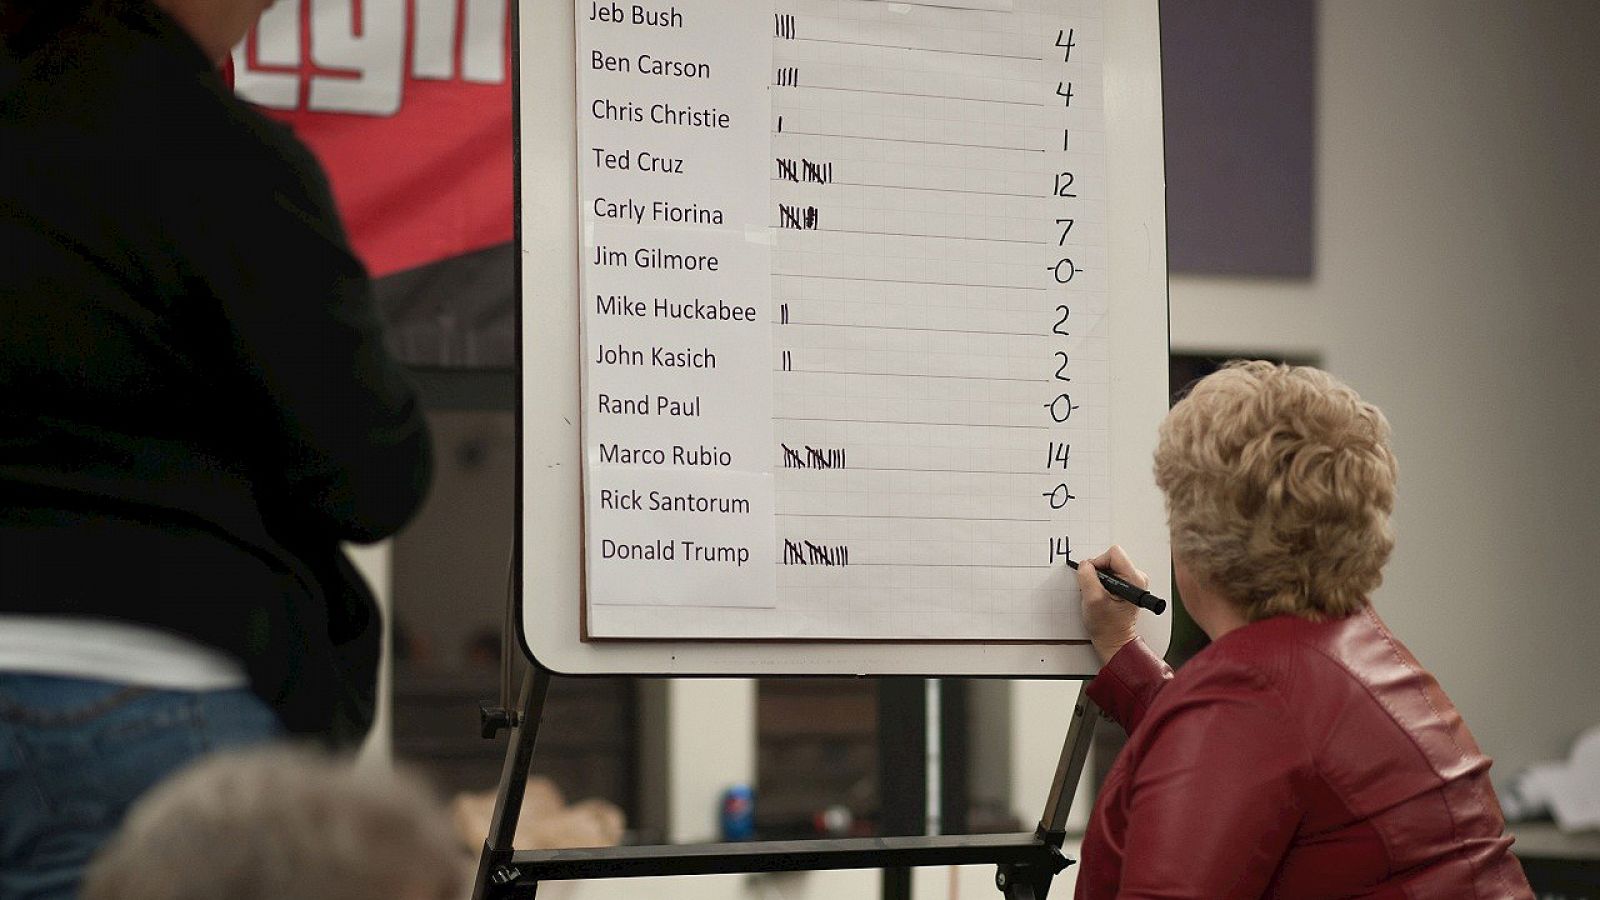 Una voluntaria lleva la cuenta de los votos en una asamblea del Partido Republicano en Iowa, el 1 de febrero de 2016. AFP / Michael B. Thomas